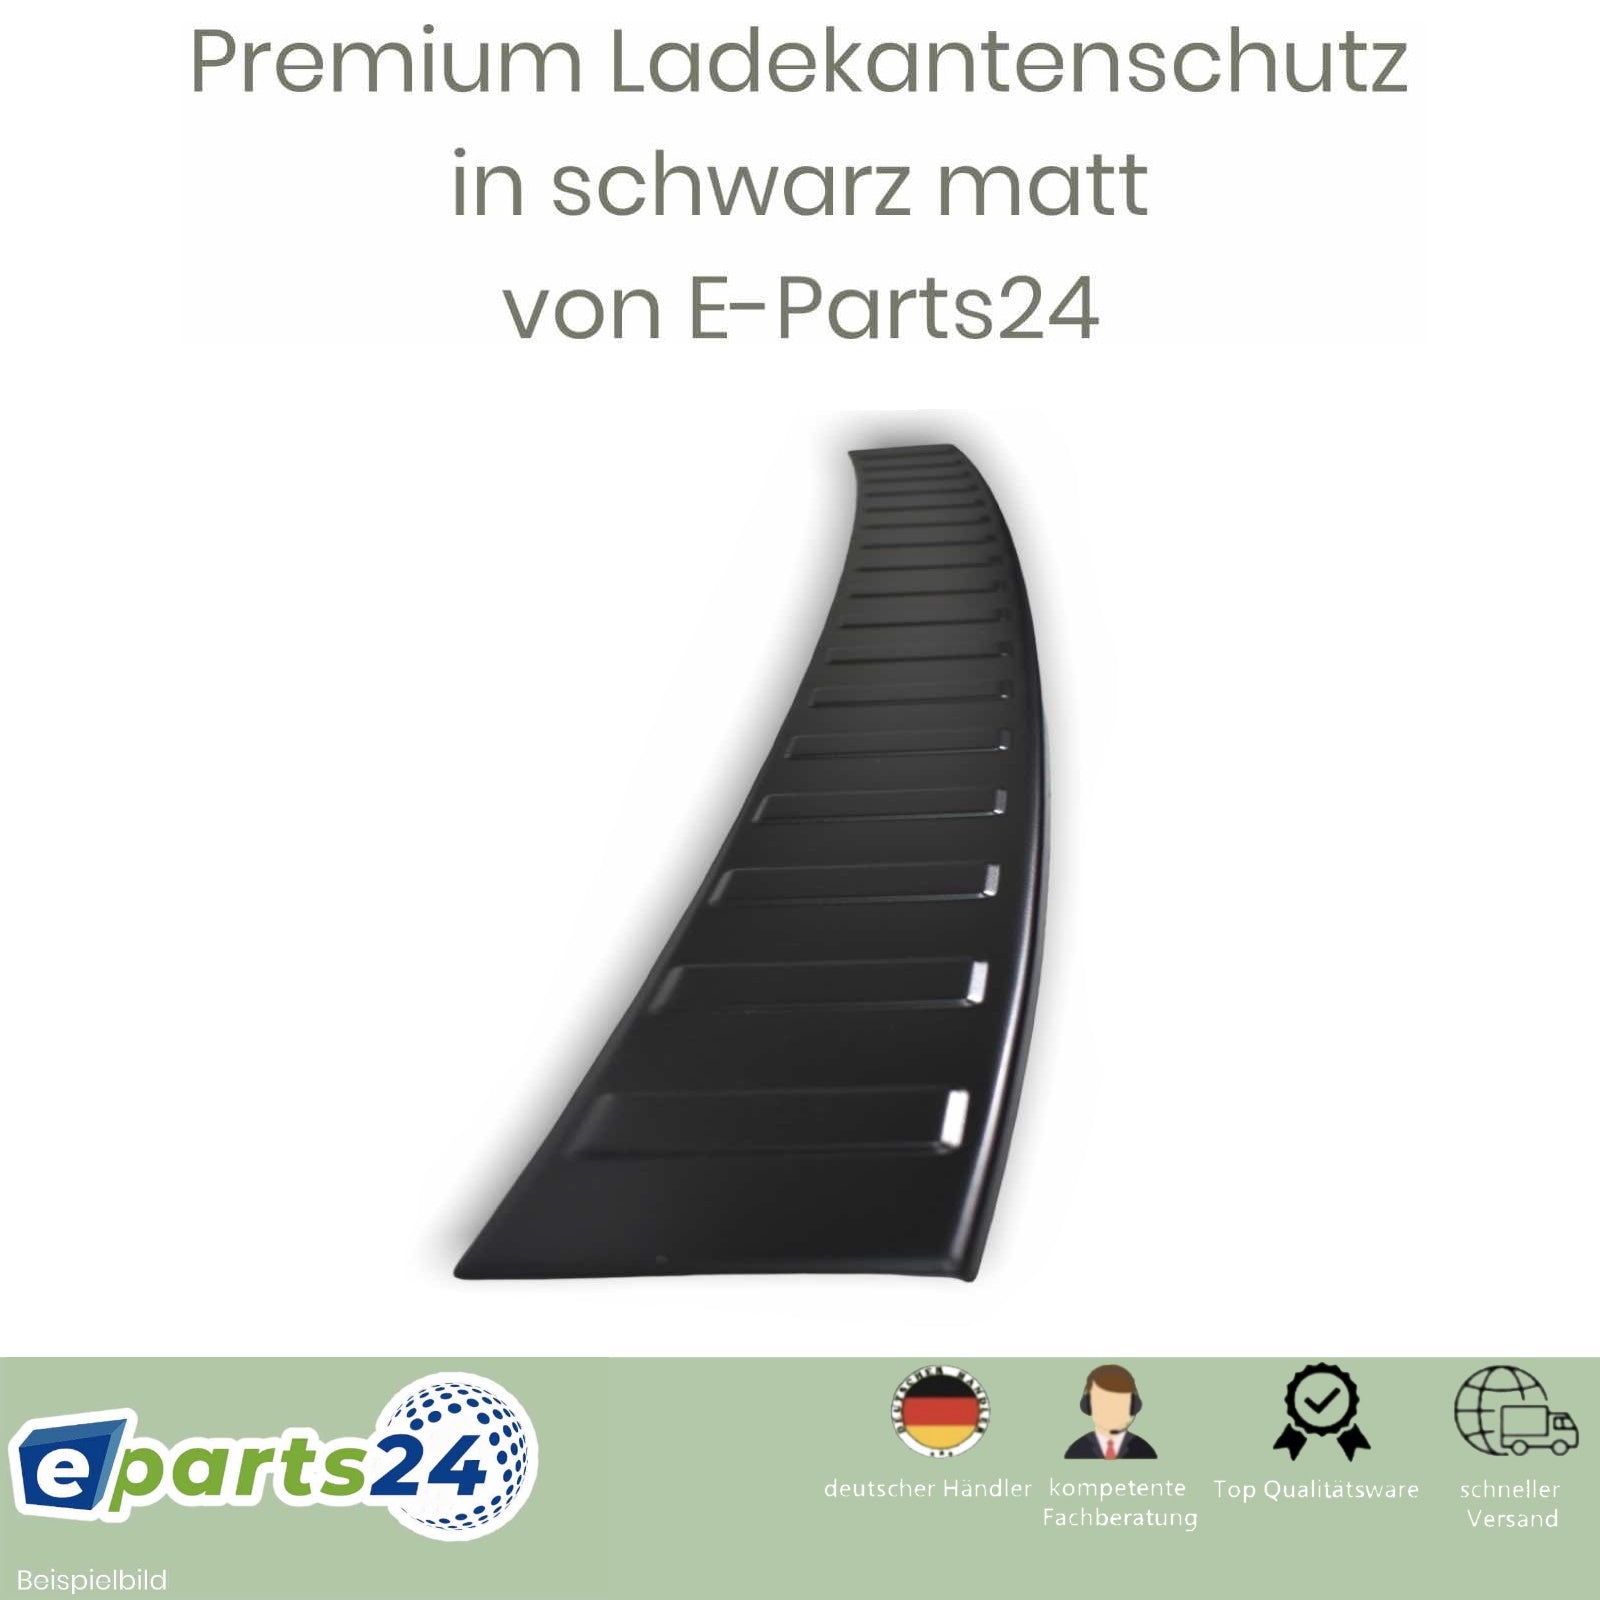 Ladekantenschutz für Seat Leon FR ST ab E-Parts24 3 2014- Cupra Kombi Edelsta – 5F